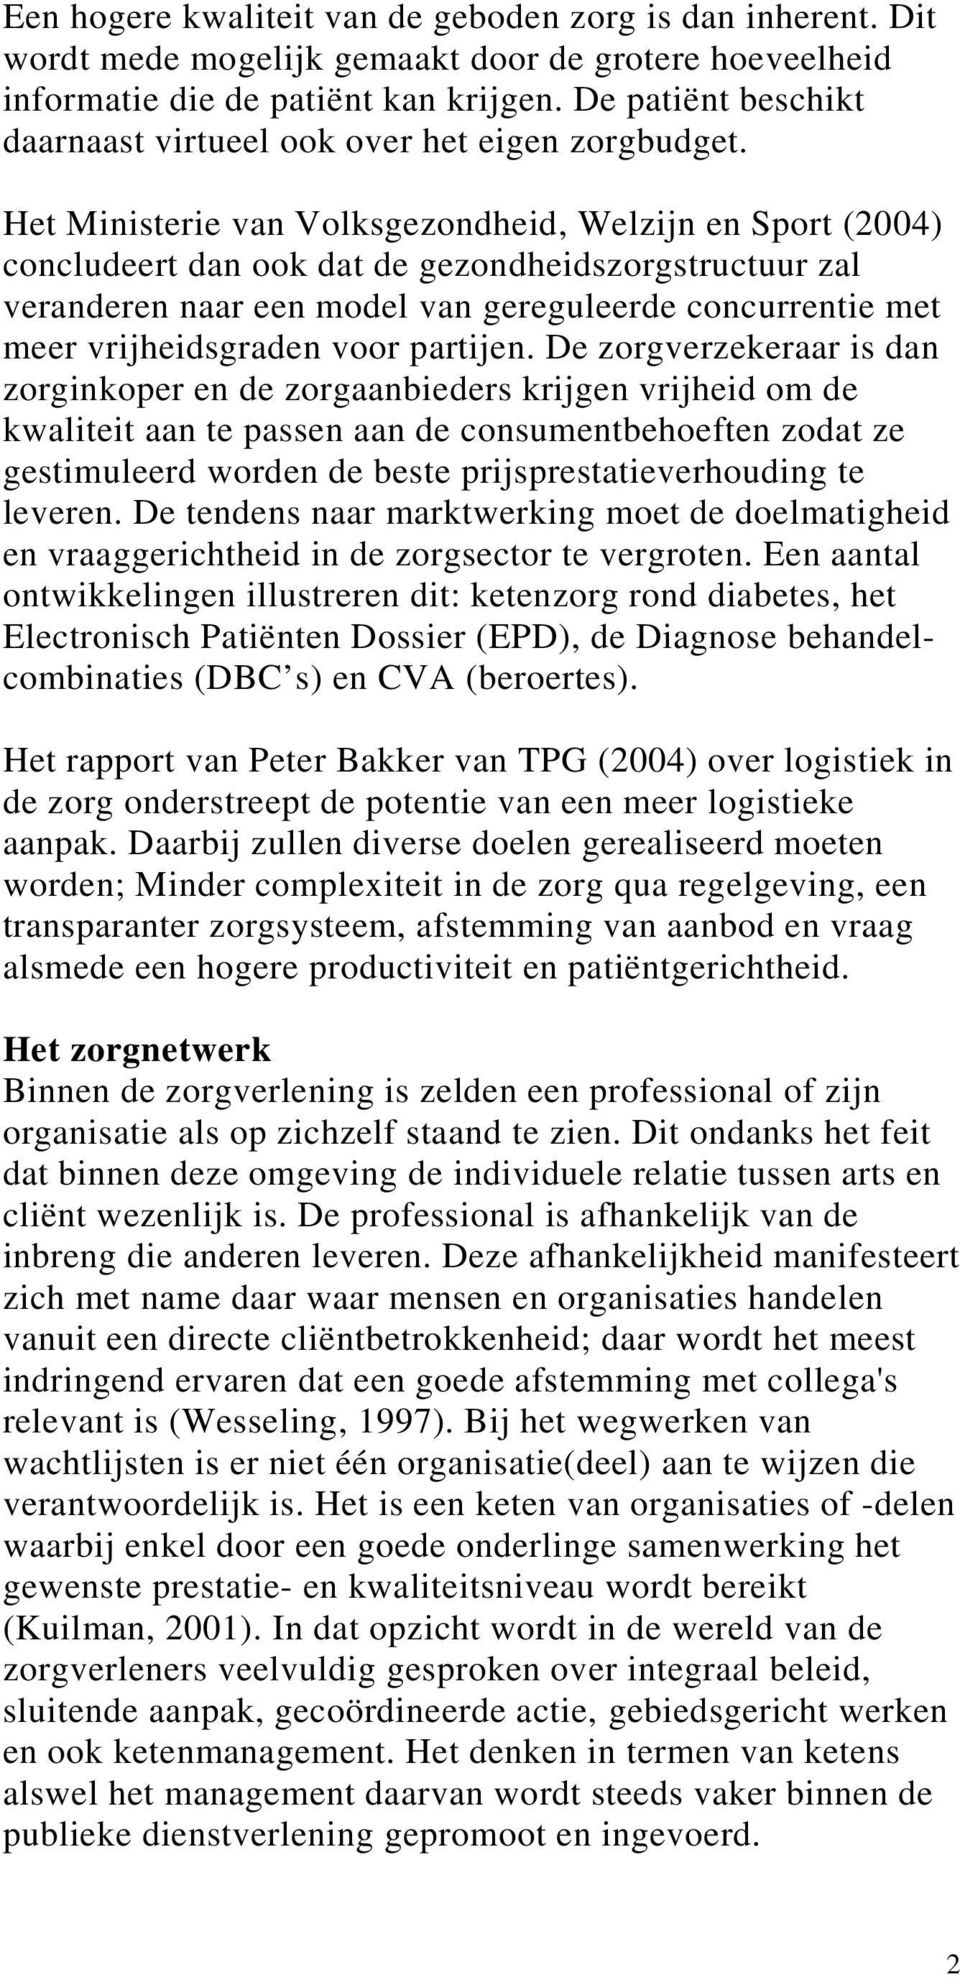 Het Ministerie van Volksgezondheid, Welzijn en Sport (2004) concludeert dan ook dat de gezondheidszorgstructuur zal veranderen naar een model van gereguleerde concurrentie met meer vrijheidsgraden